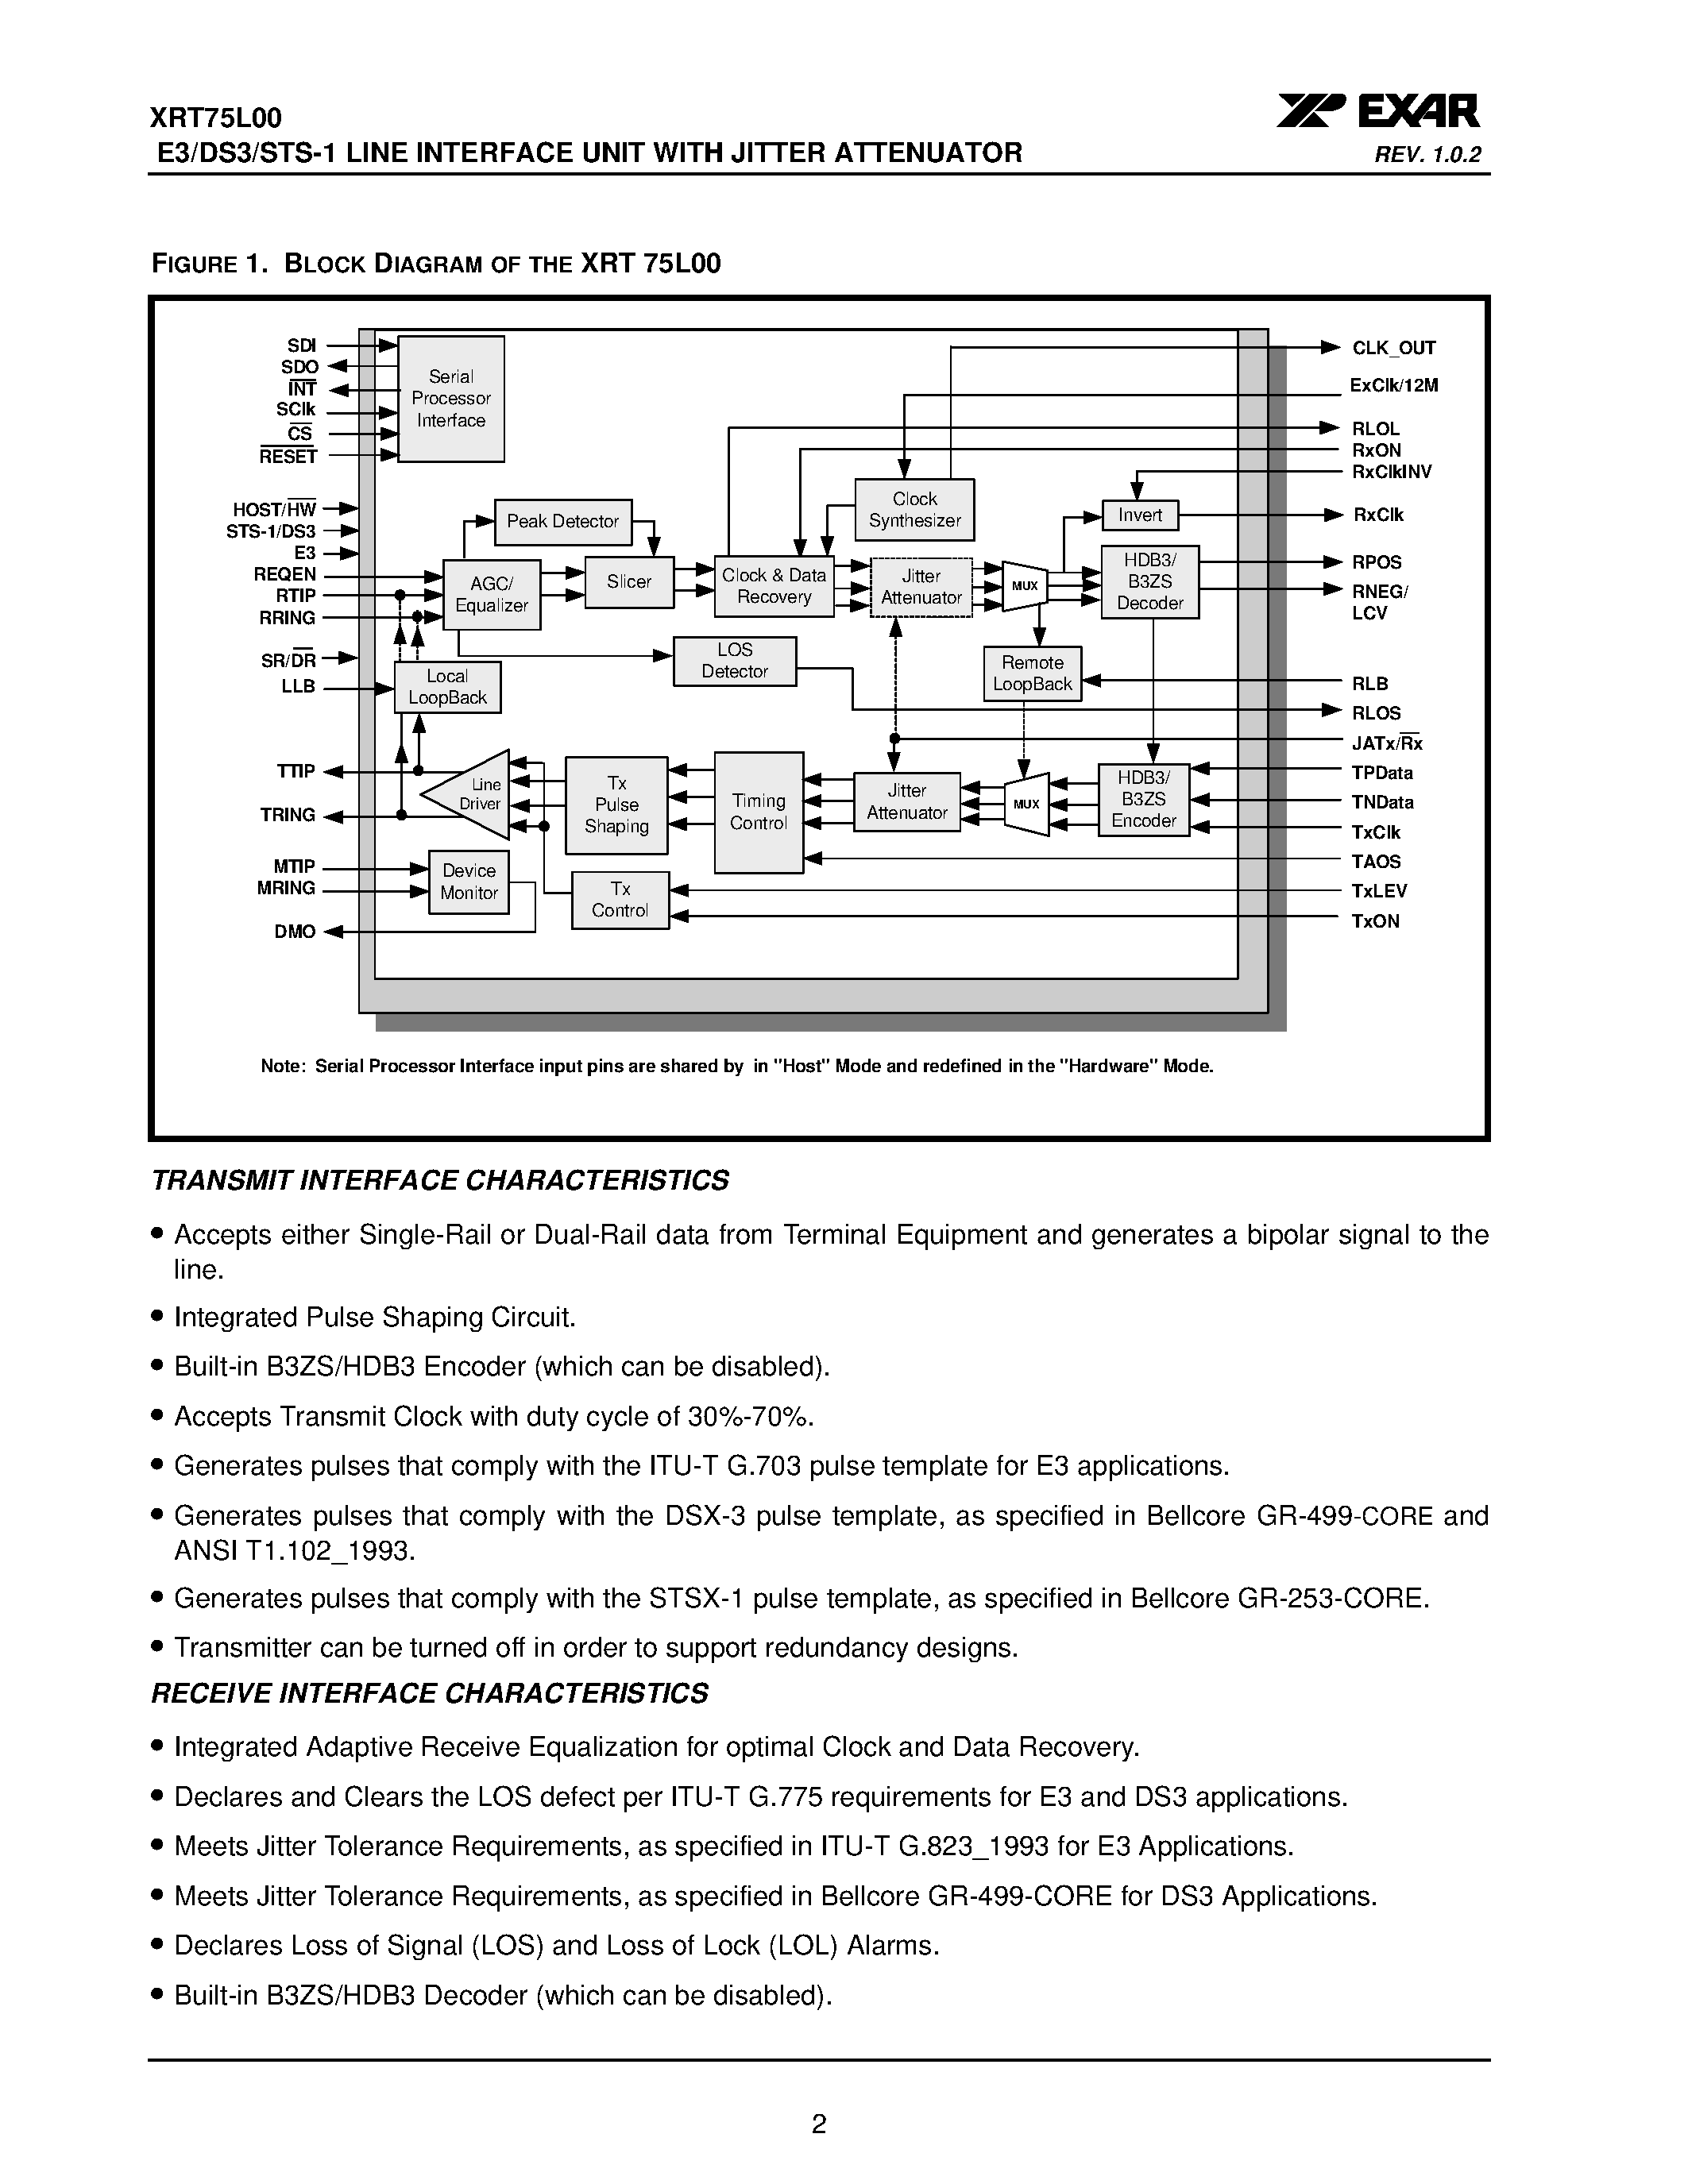 Даташит XRT75L00 - E3/DS3/STS-1 LINE INTERFACE UNIT страница 2